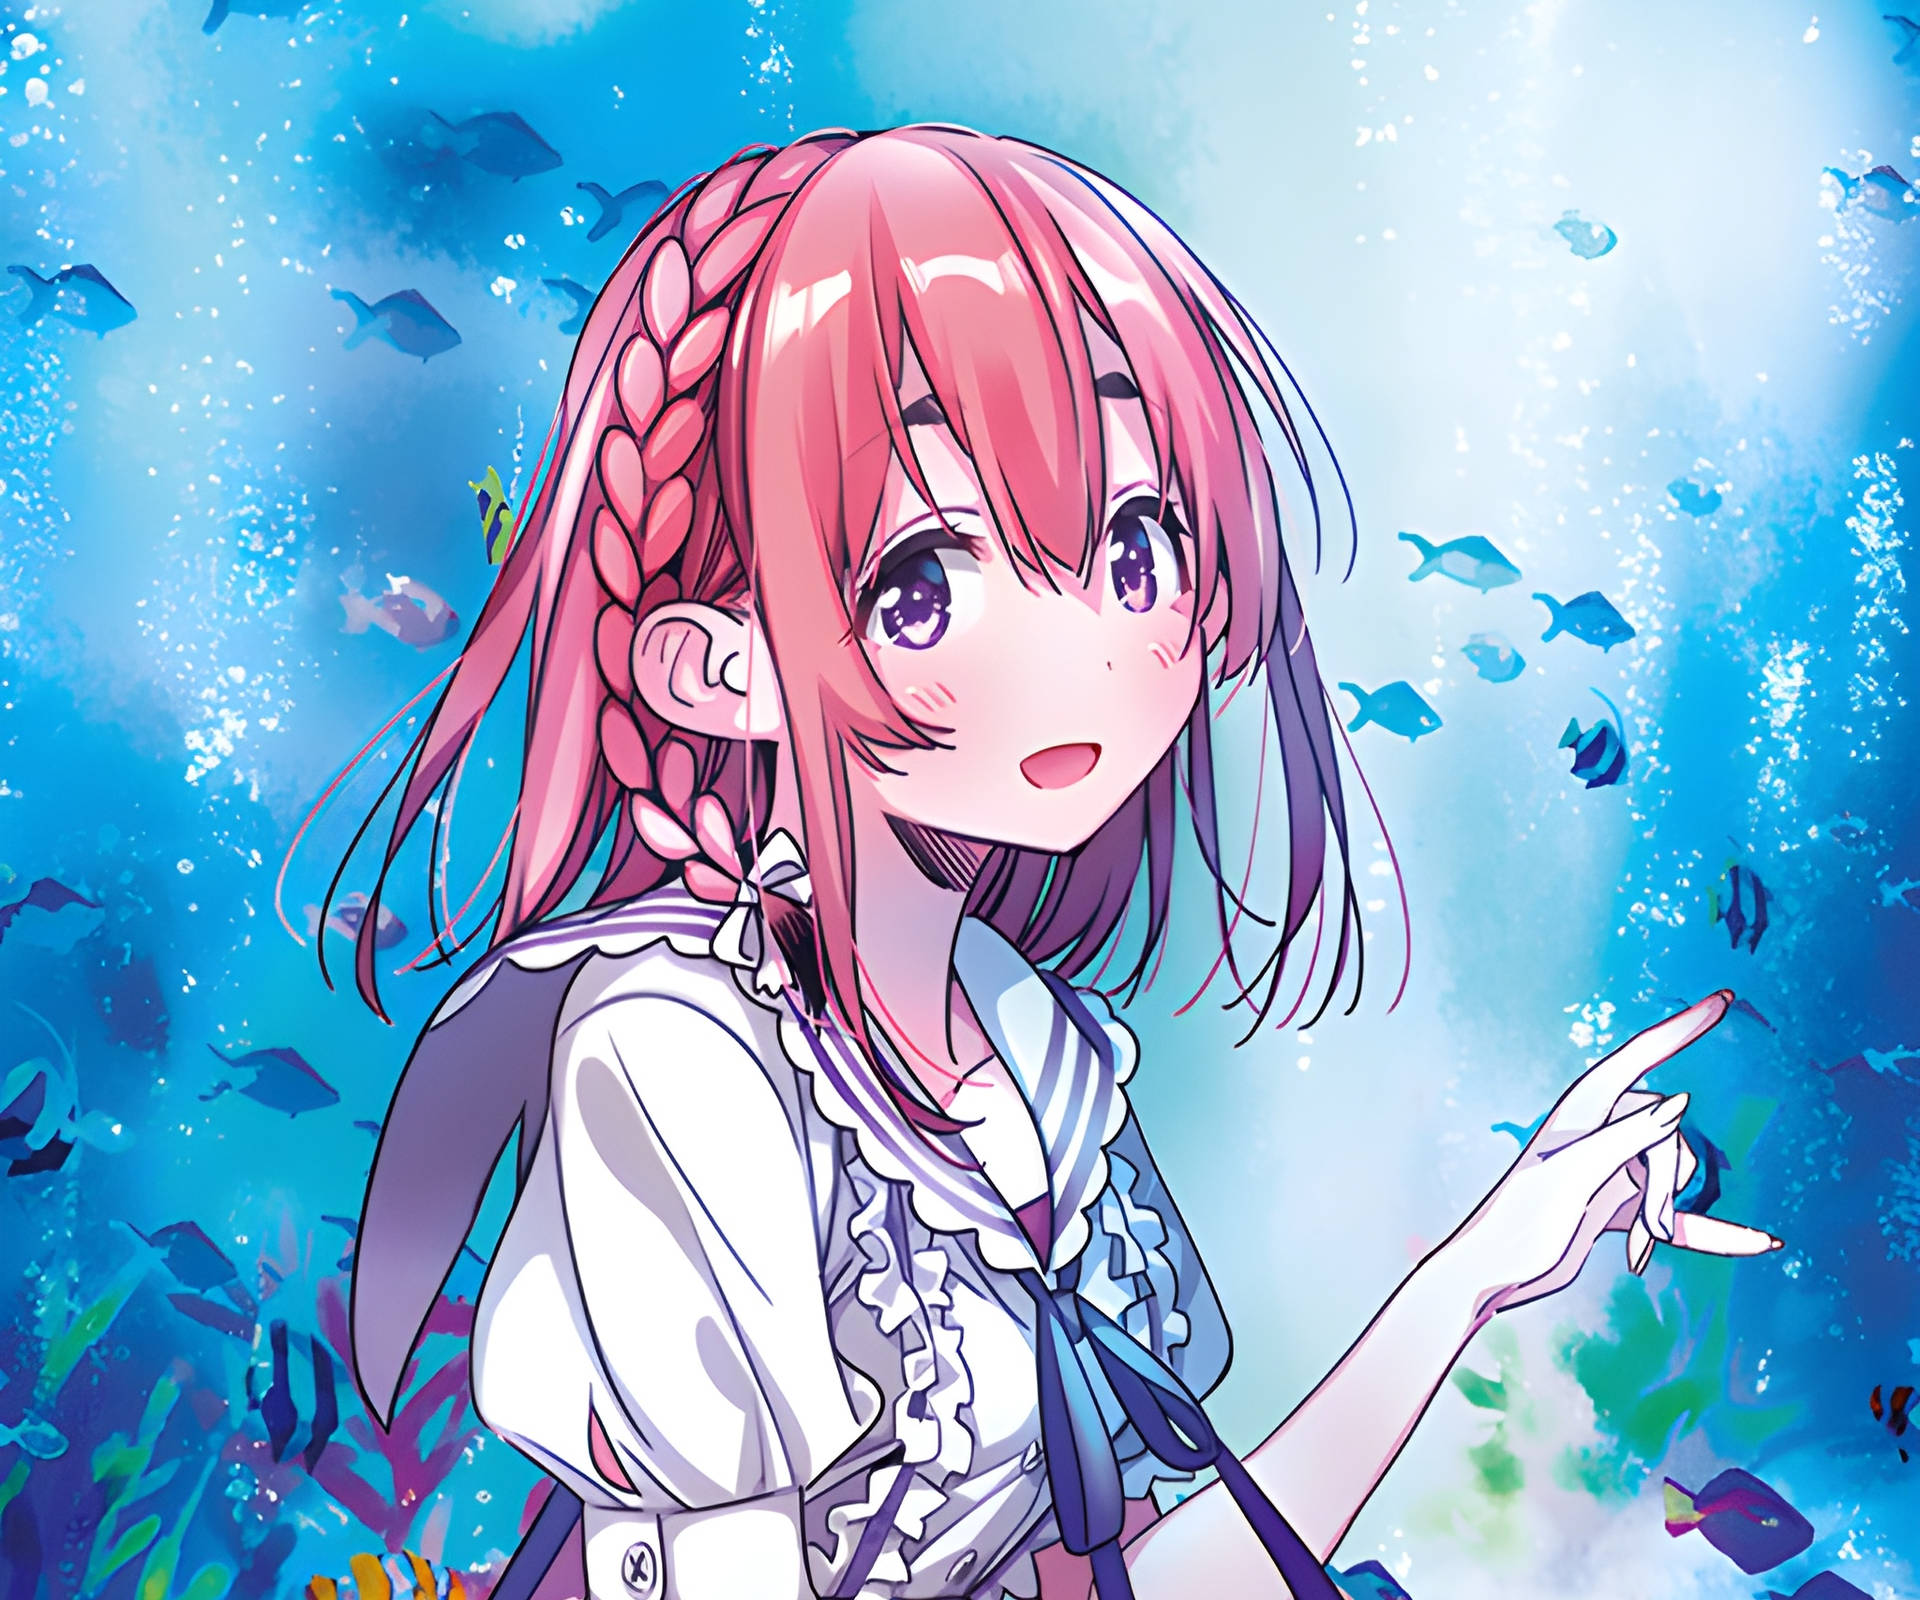 Sumi Rent A Girlfriend Anime Wallpaper